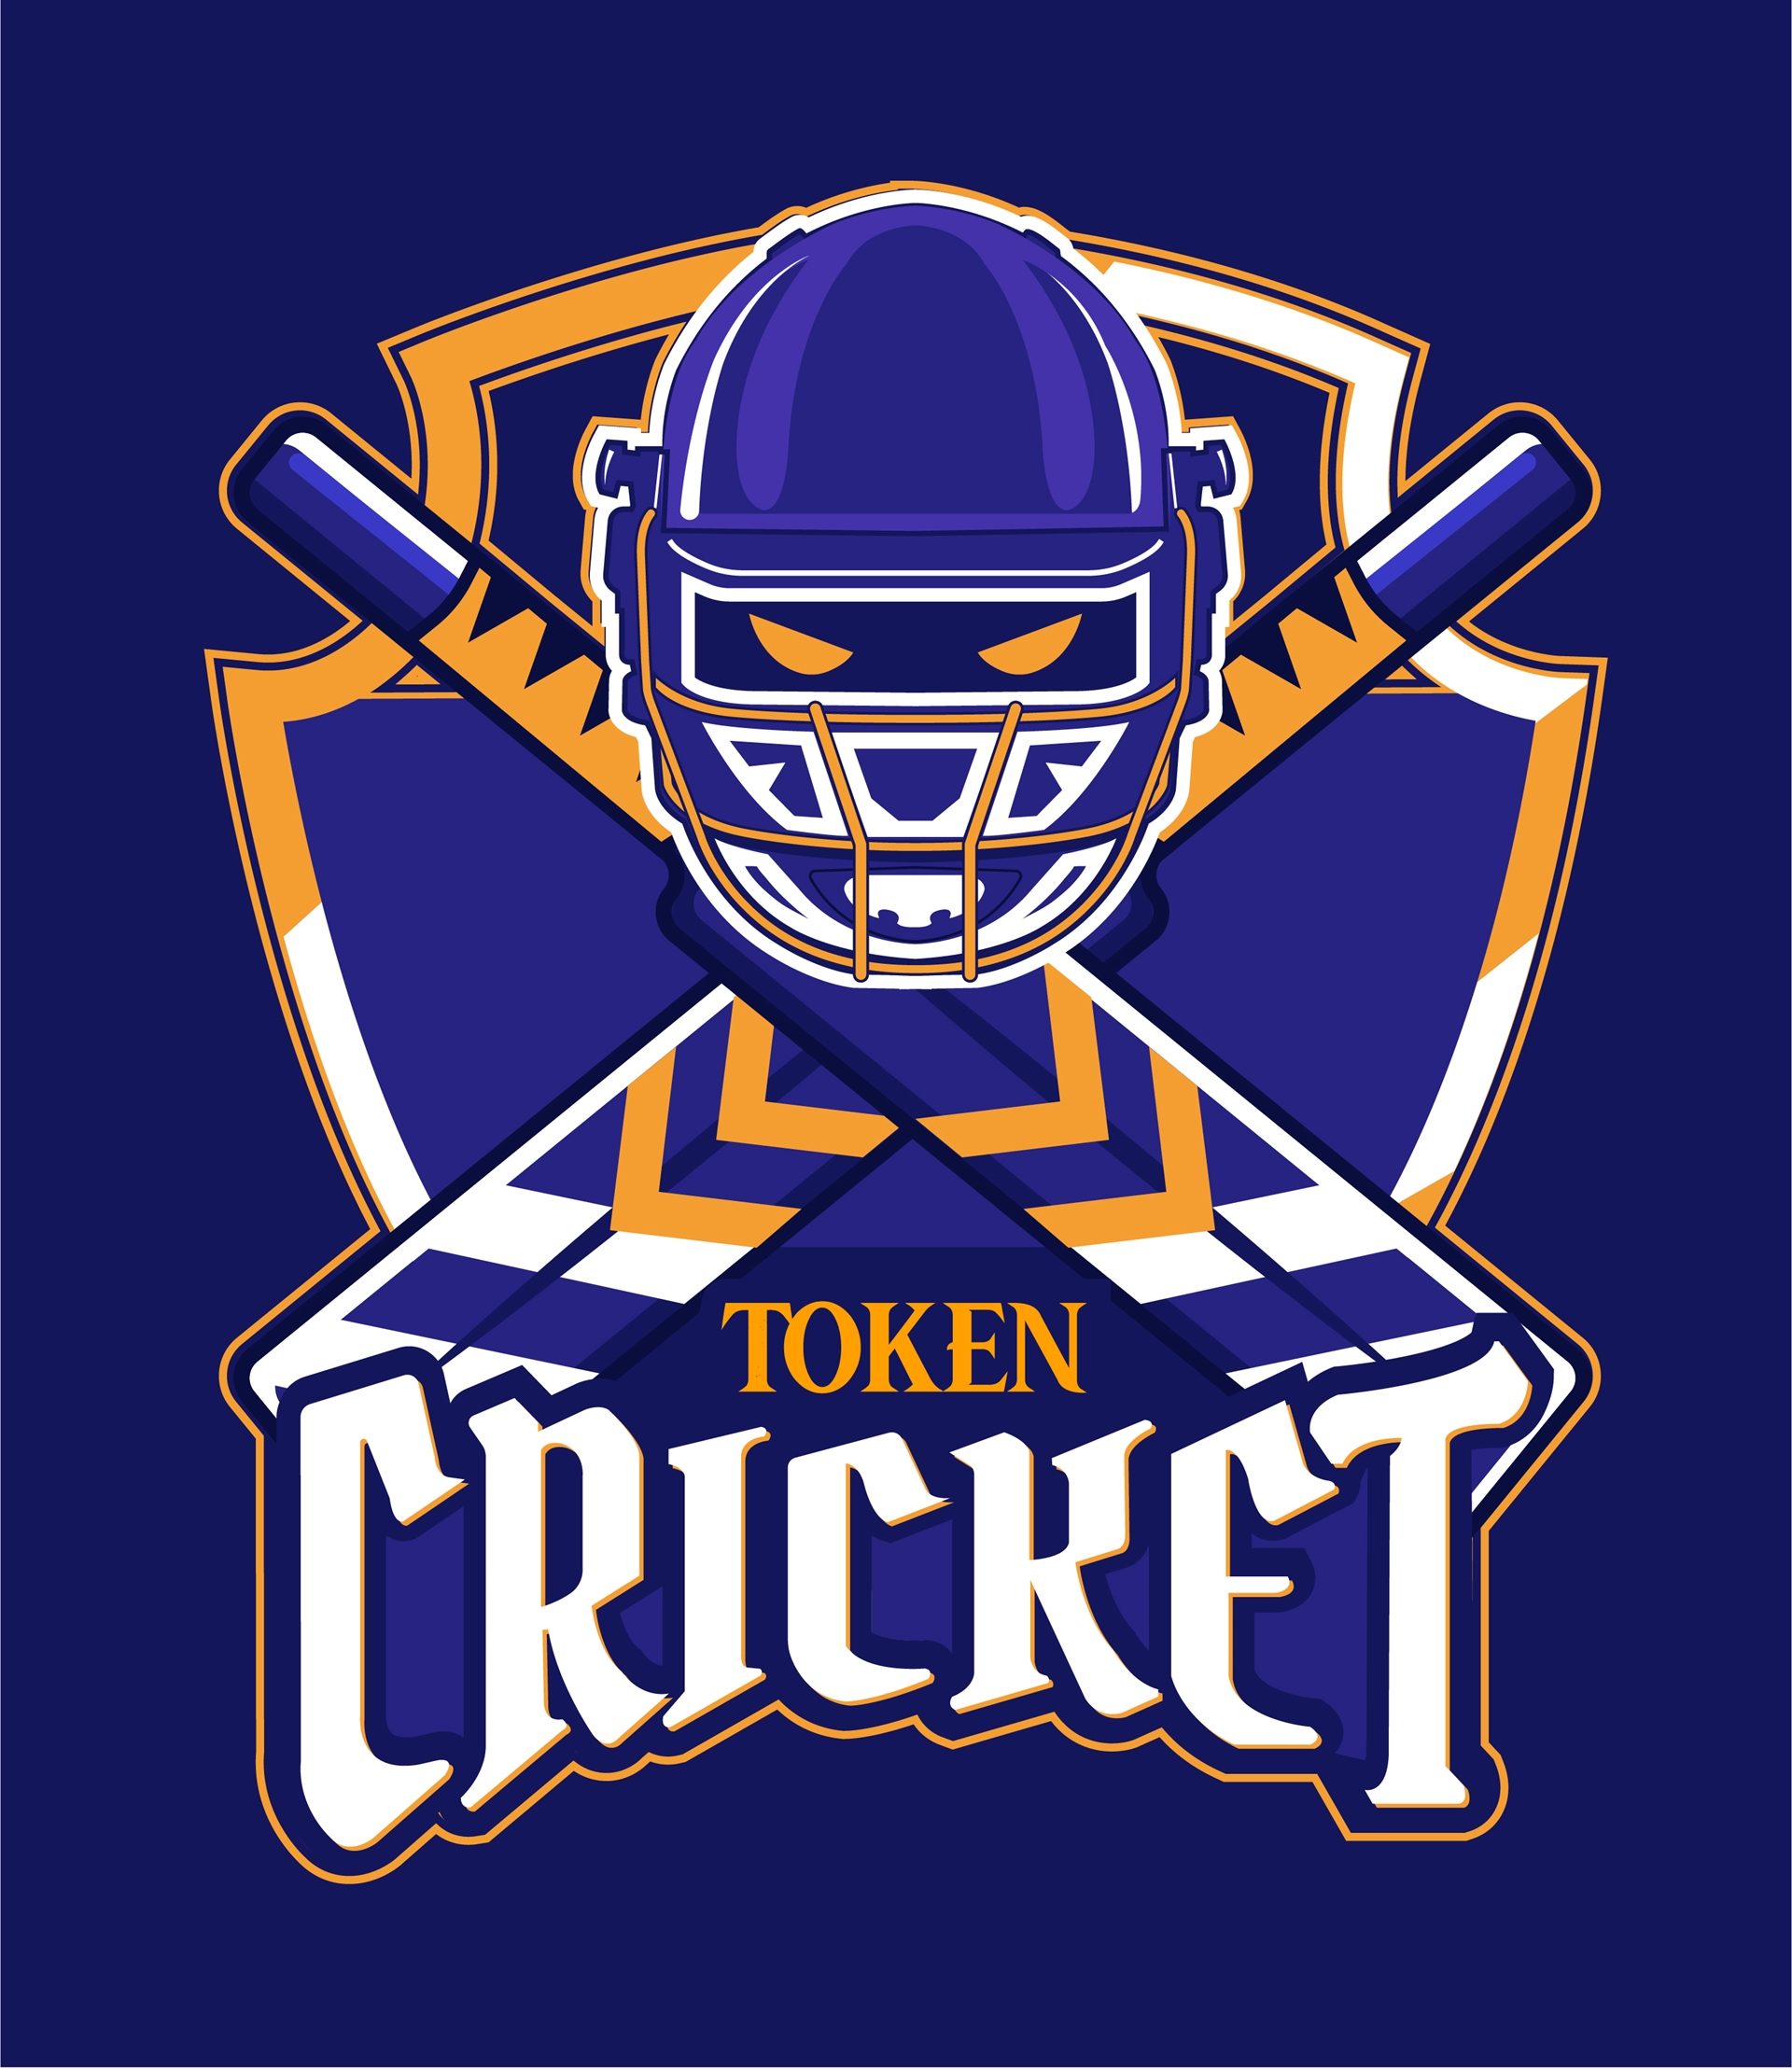 Cricket token logo